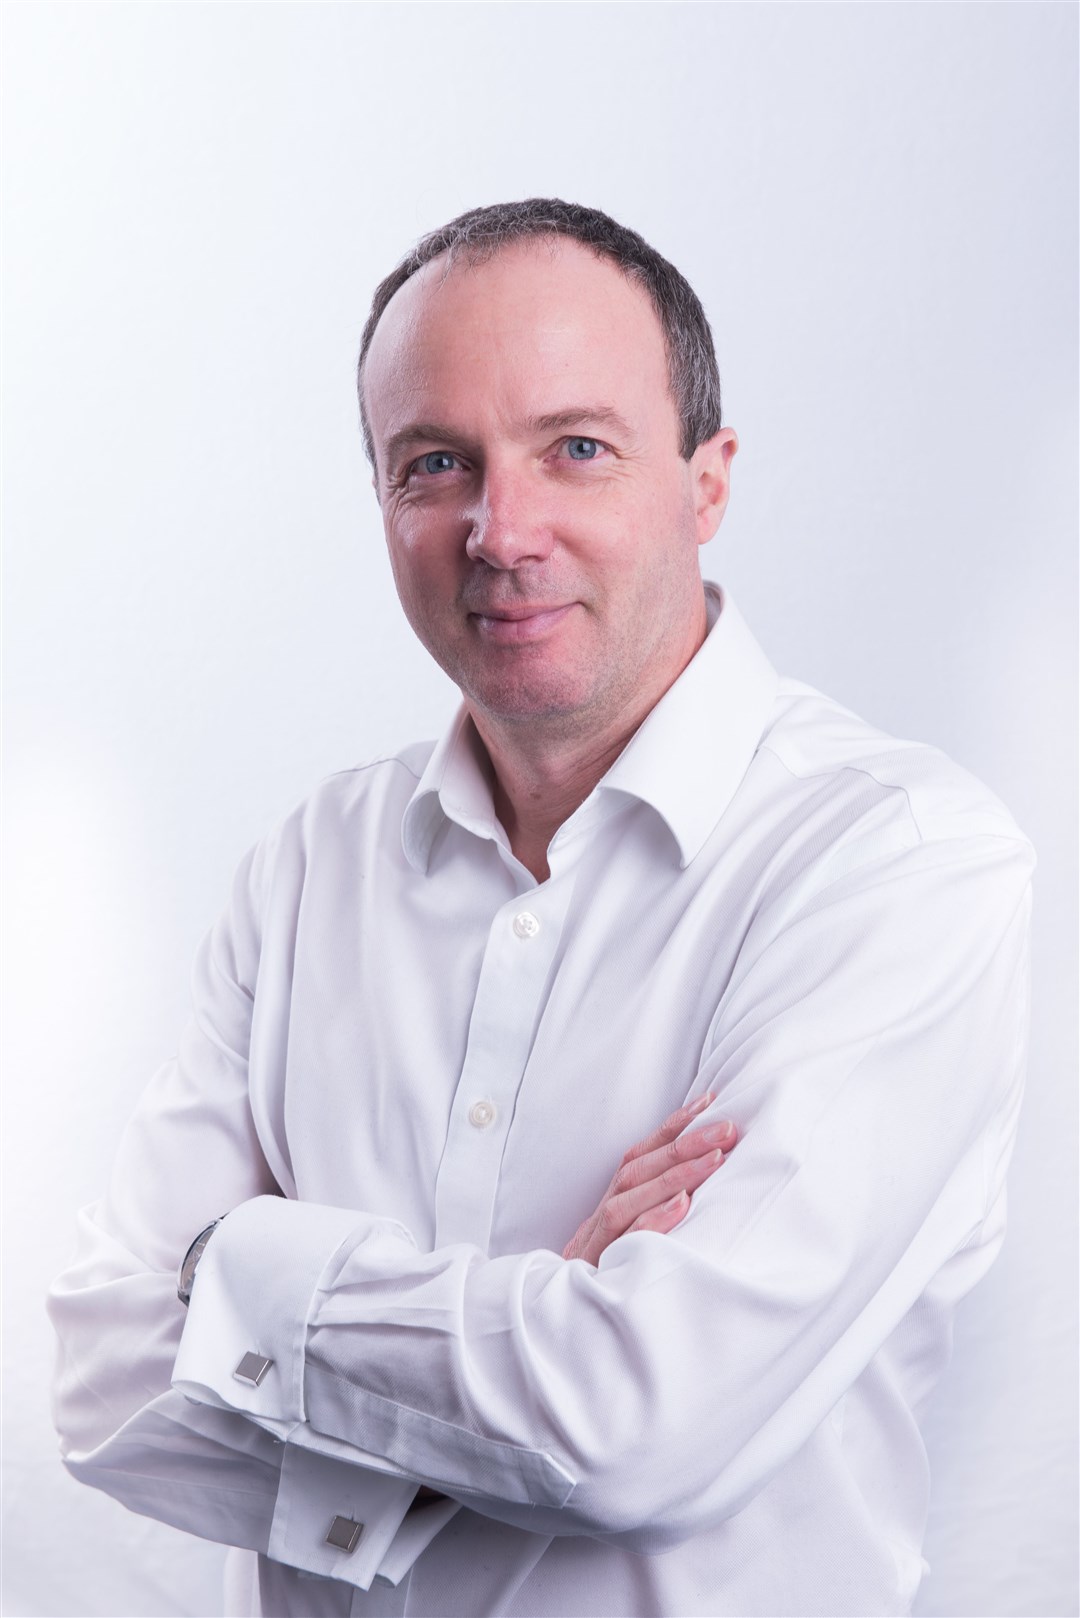 Martin Coates, the CEO of Orbex.